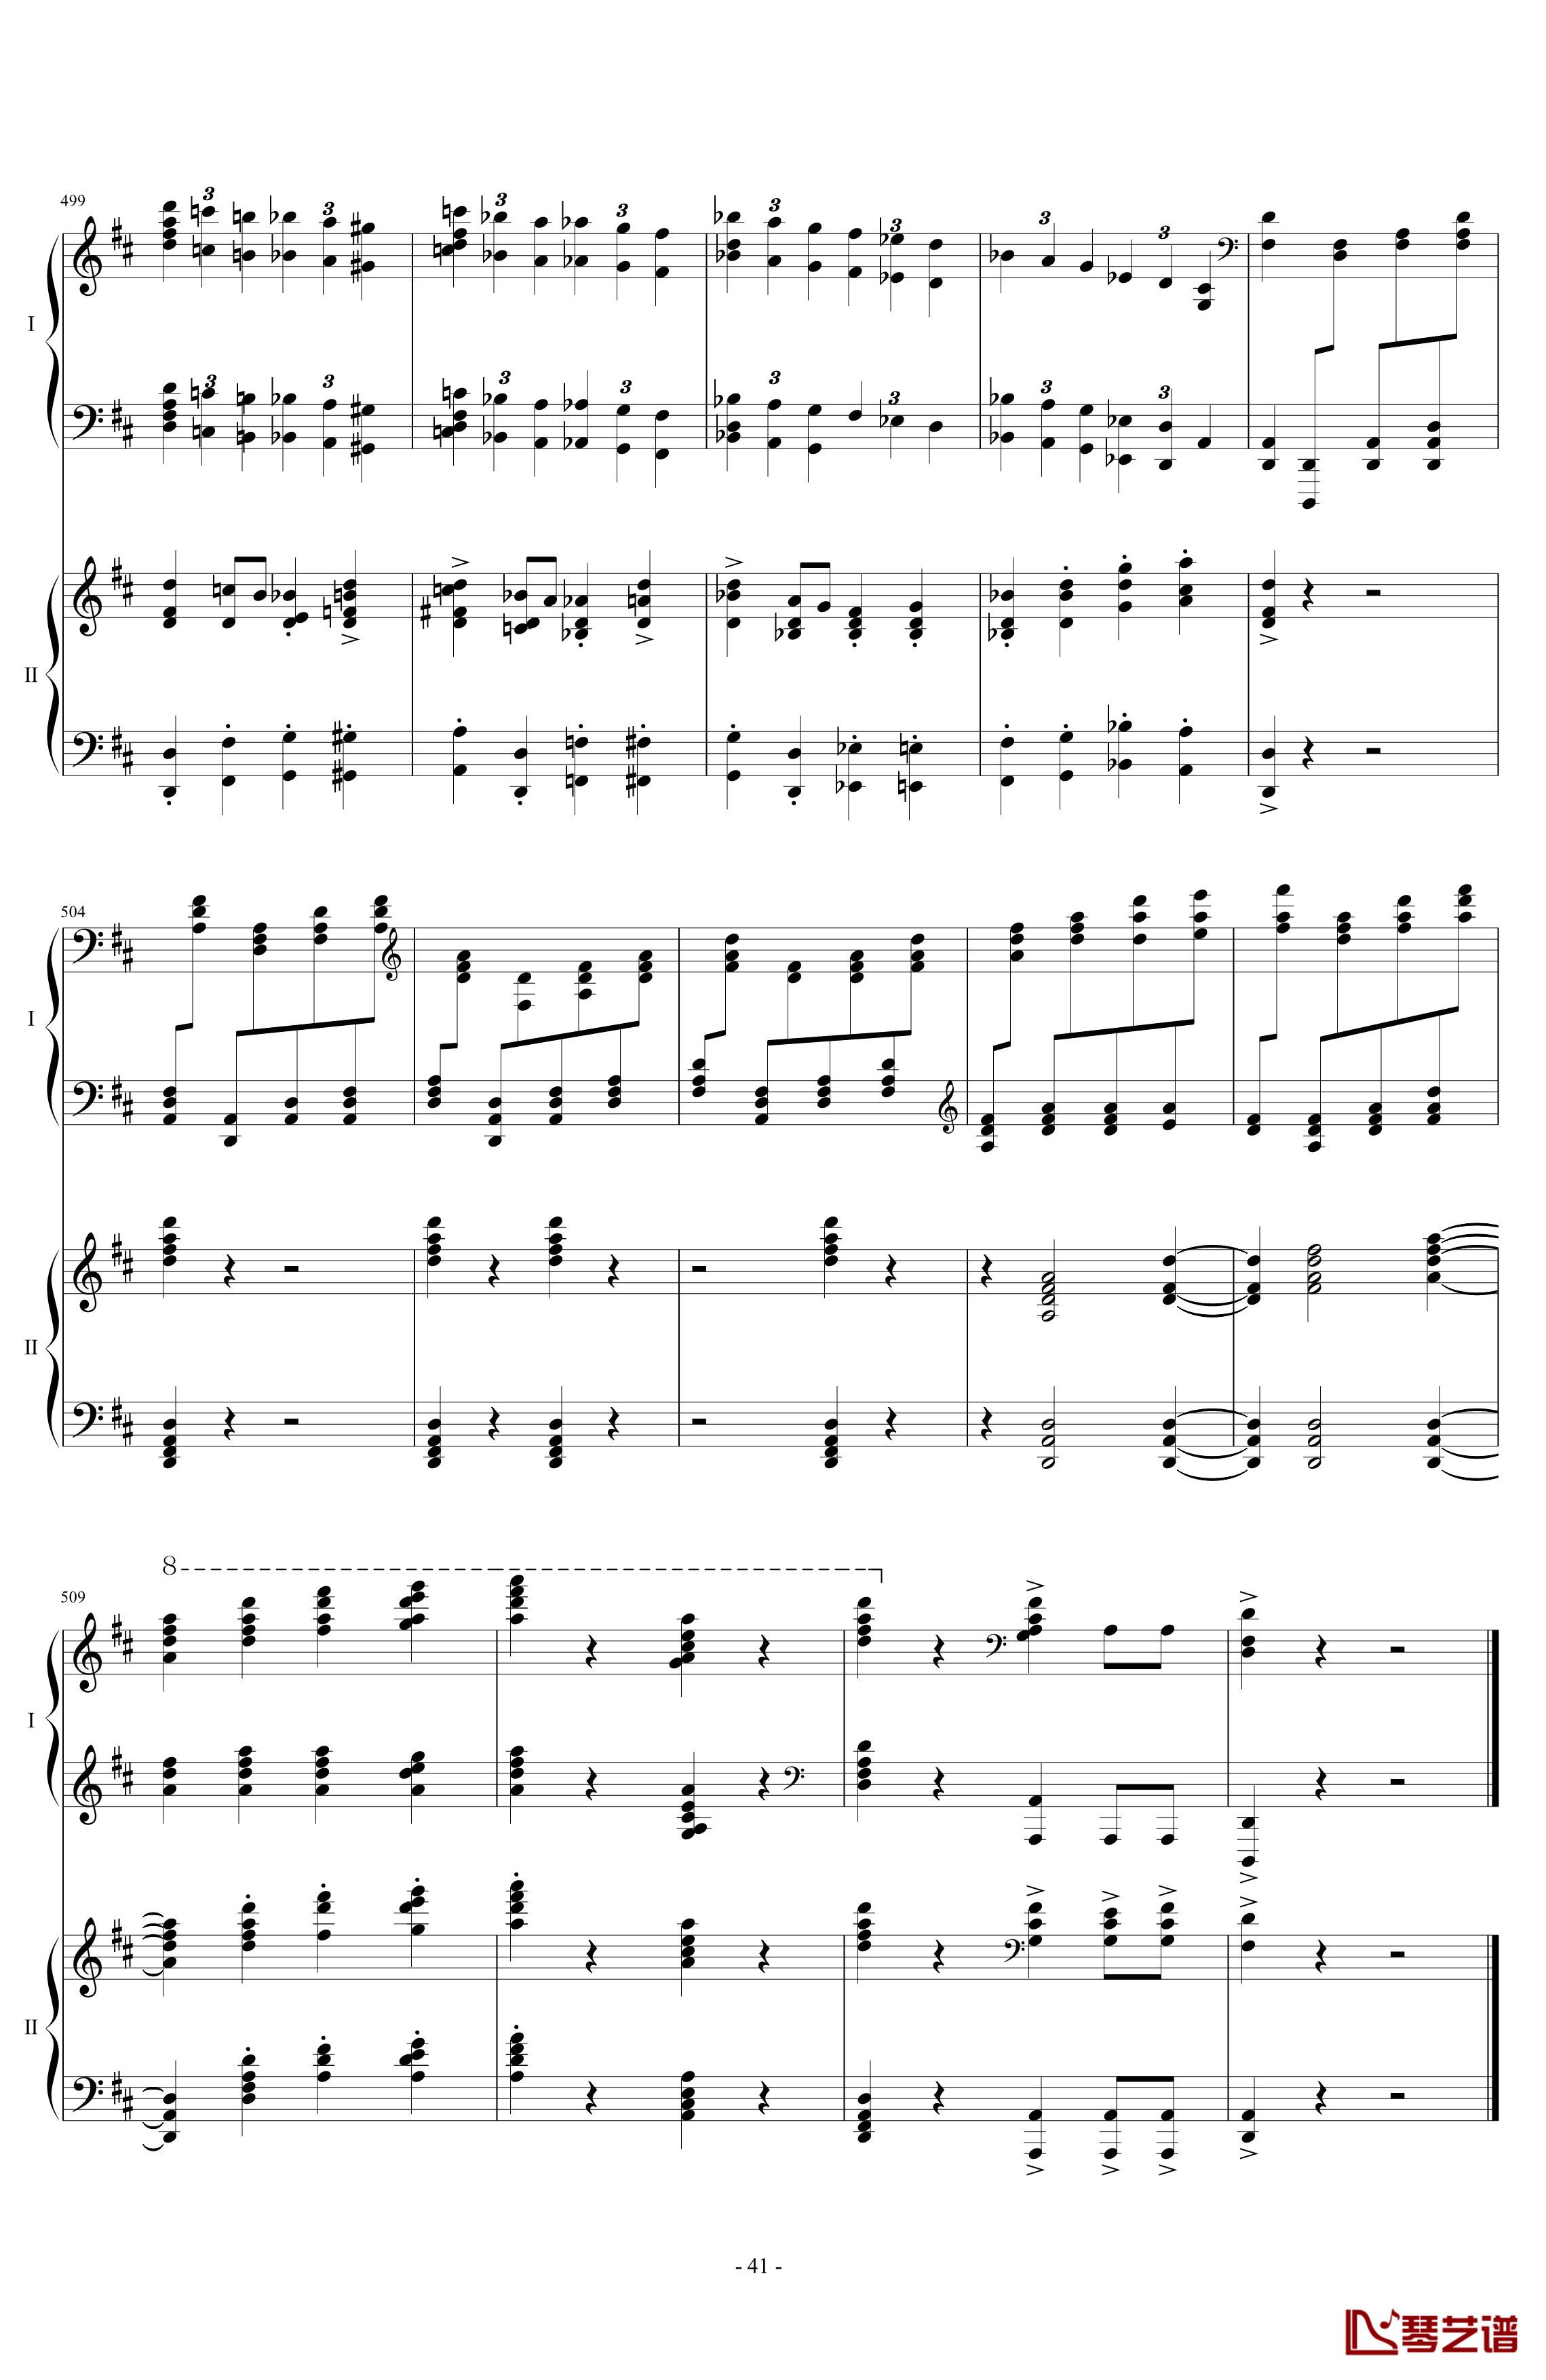 拉三第三乐章41页双钢琴钢琴谱-最难钢琴曲-拉赫马尼若夫41